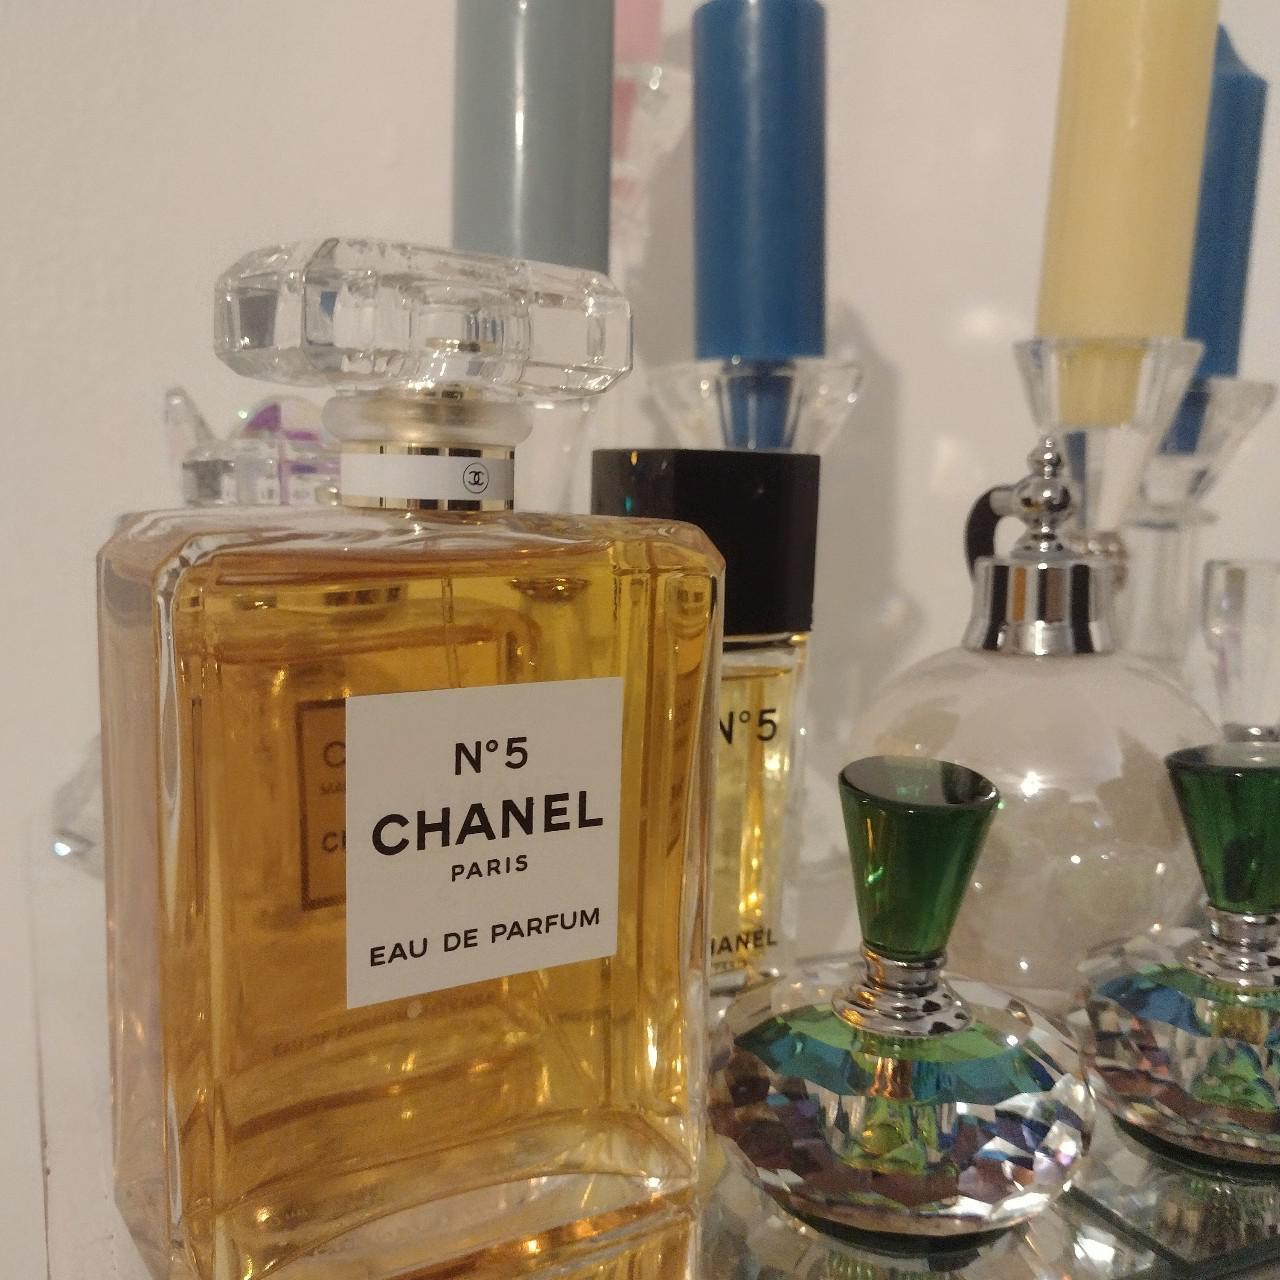 EMPTY CHANEL PERFUME BOTTLES Chanel CHANCE eau - Depop